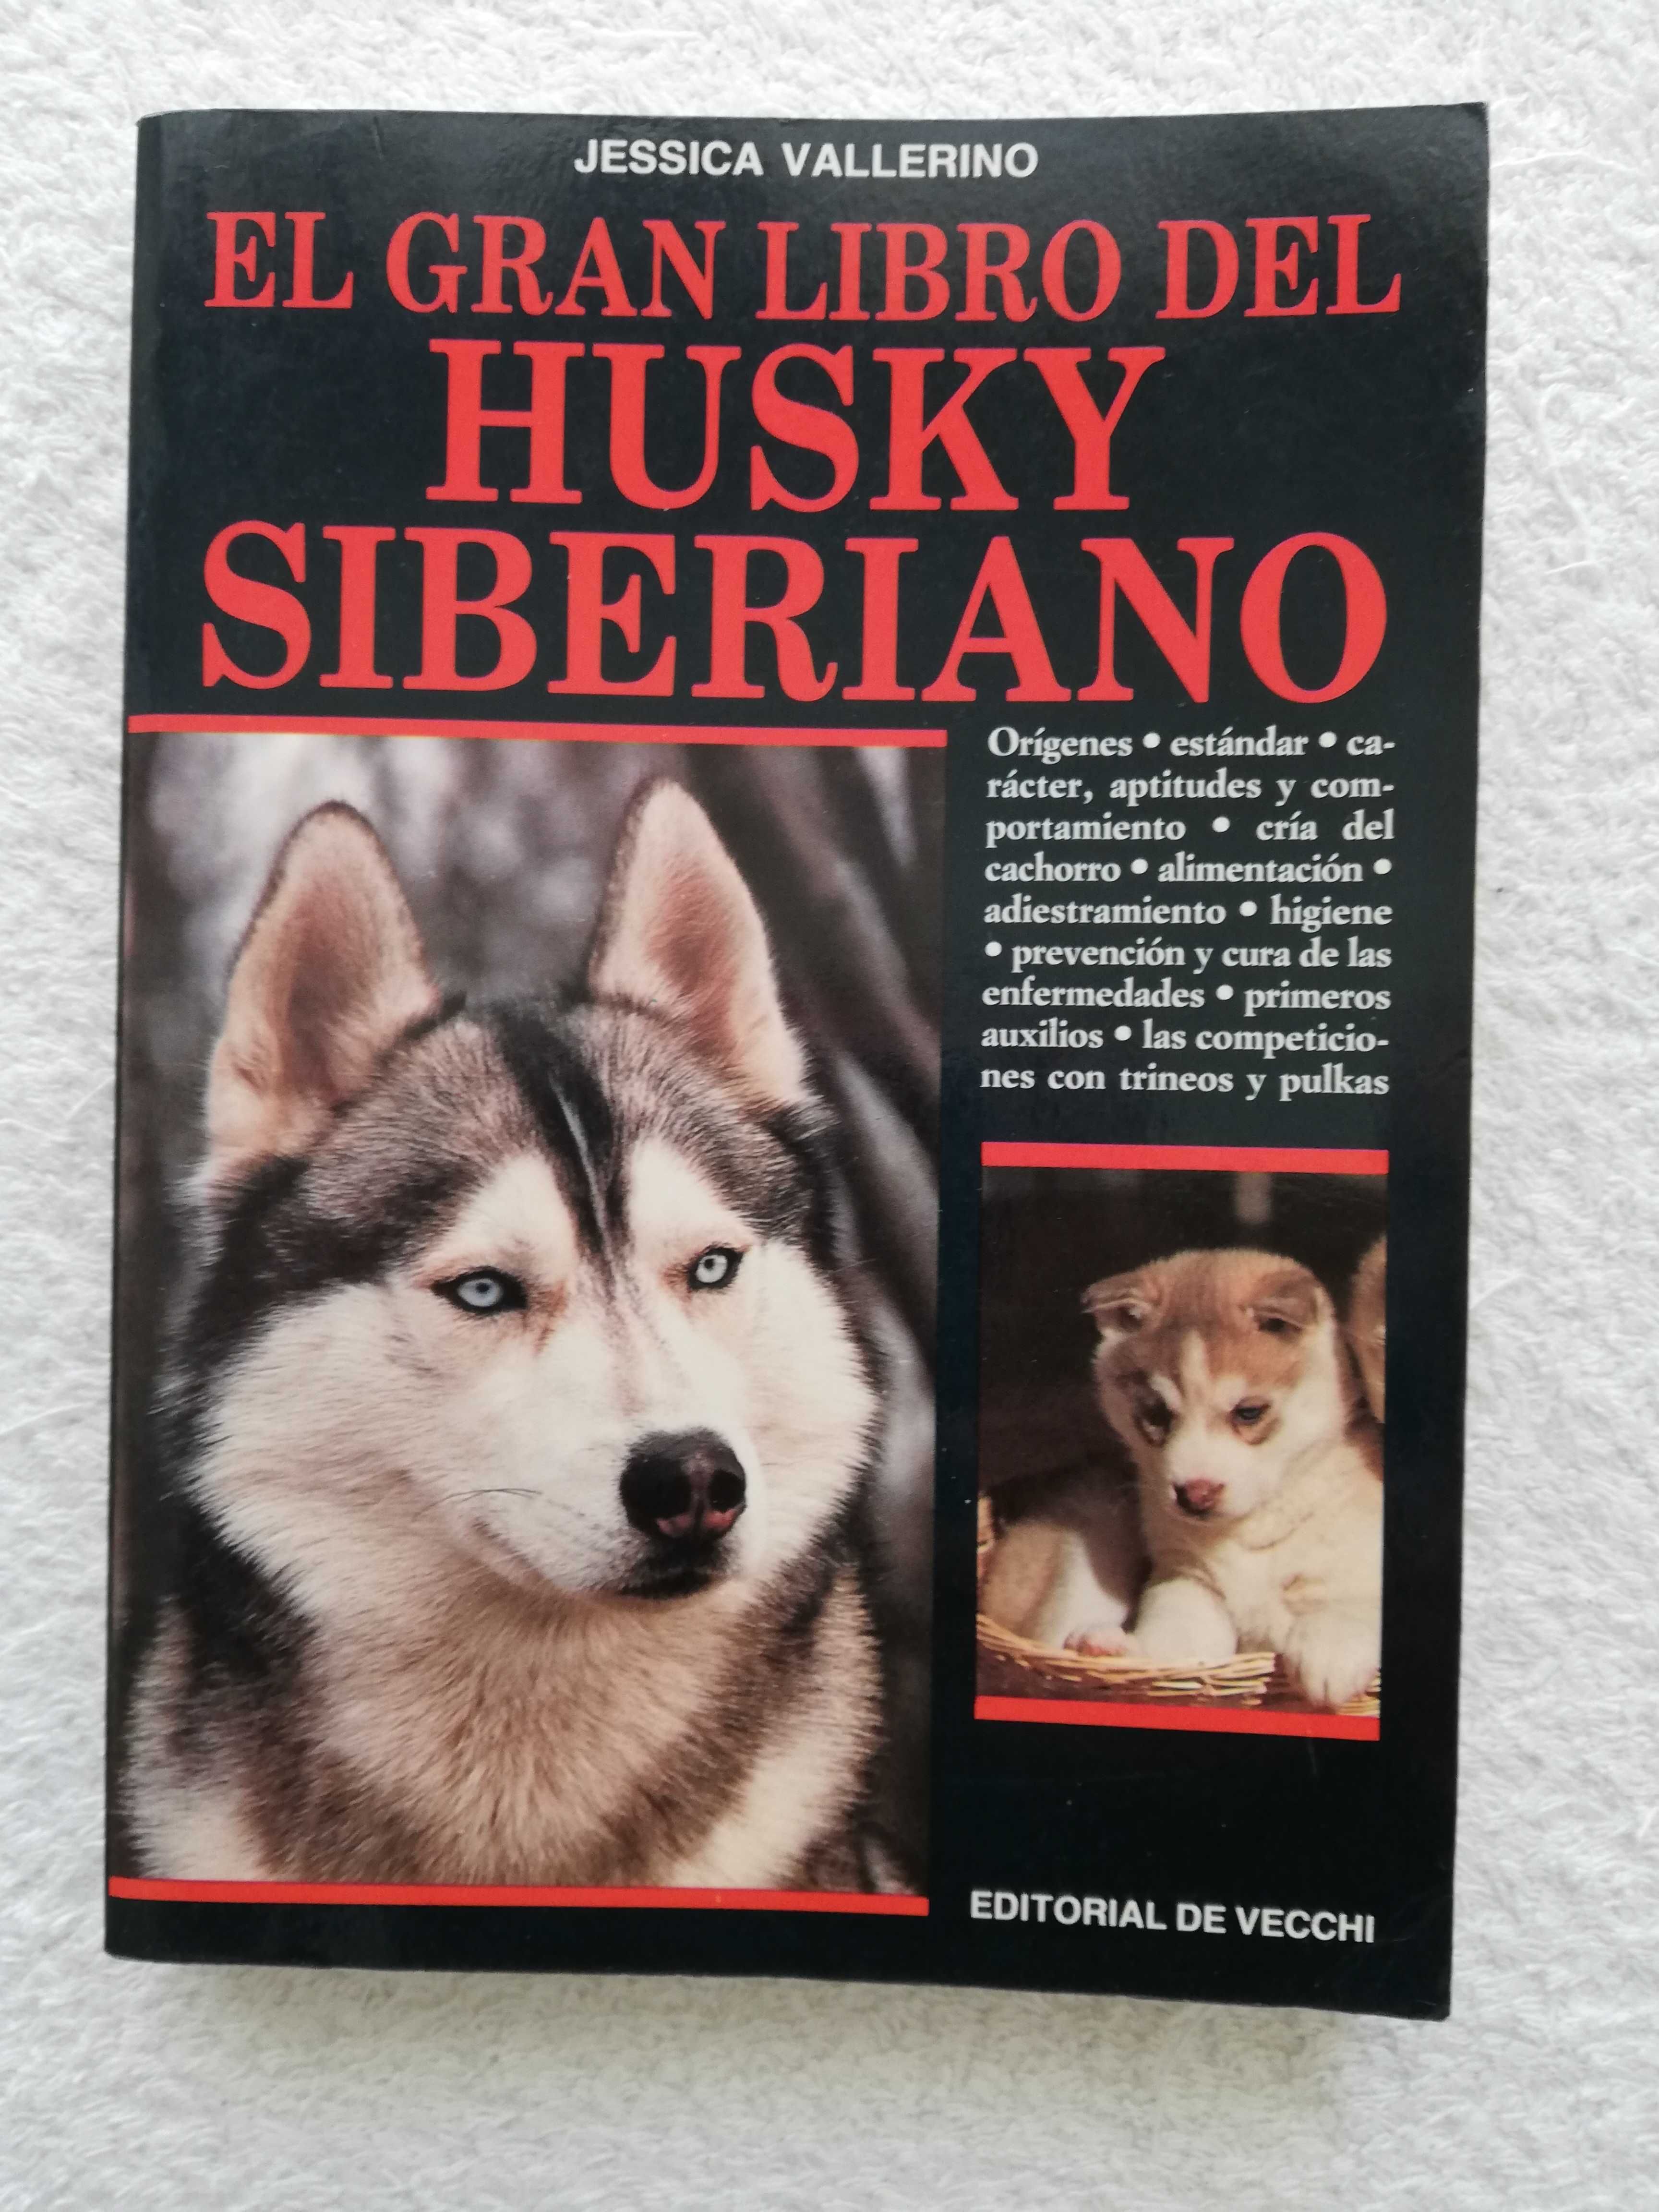 Livro do  Husky Siberiano